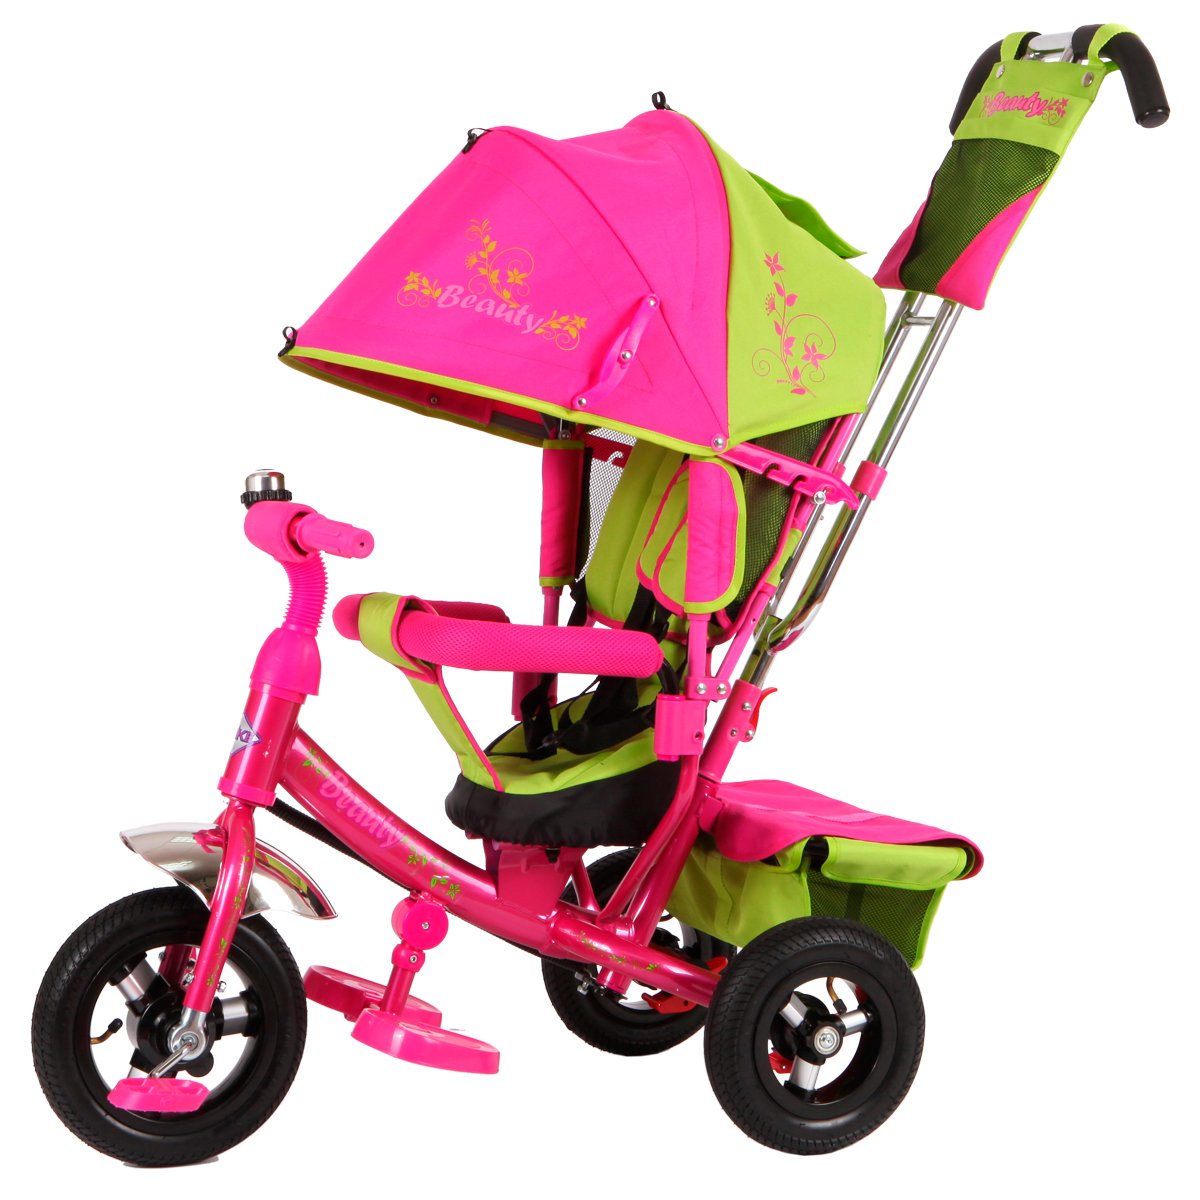 Велосипед с ручкой розовый. Moby Kids Cosmo велосипед 3-колесный. Велосипед Beauty ba2 Trike. Трехколесный велосипед Beauty ba2. Трехколесный велосипед с ручкой кари зеленый xg6631-t16 61204010.